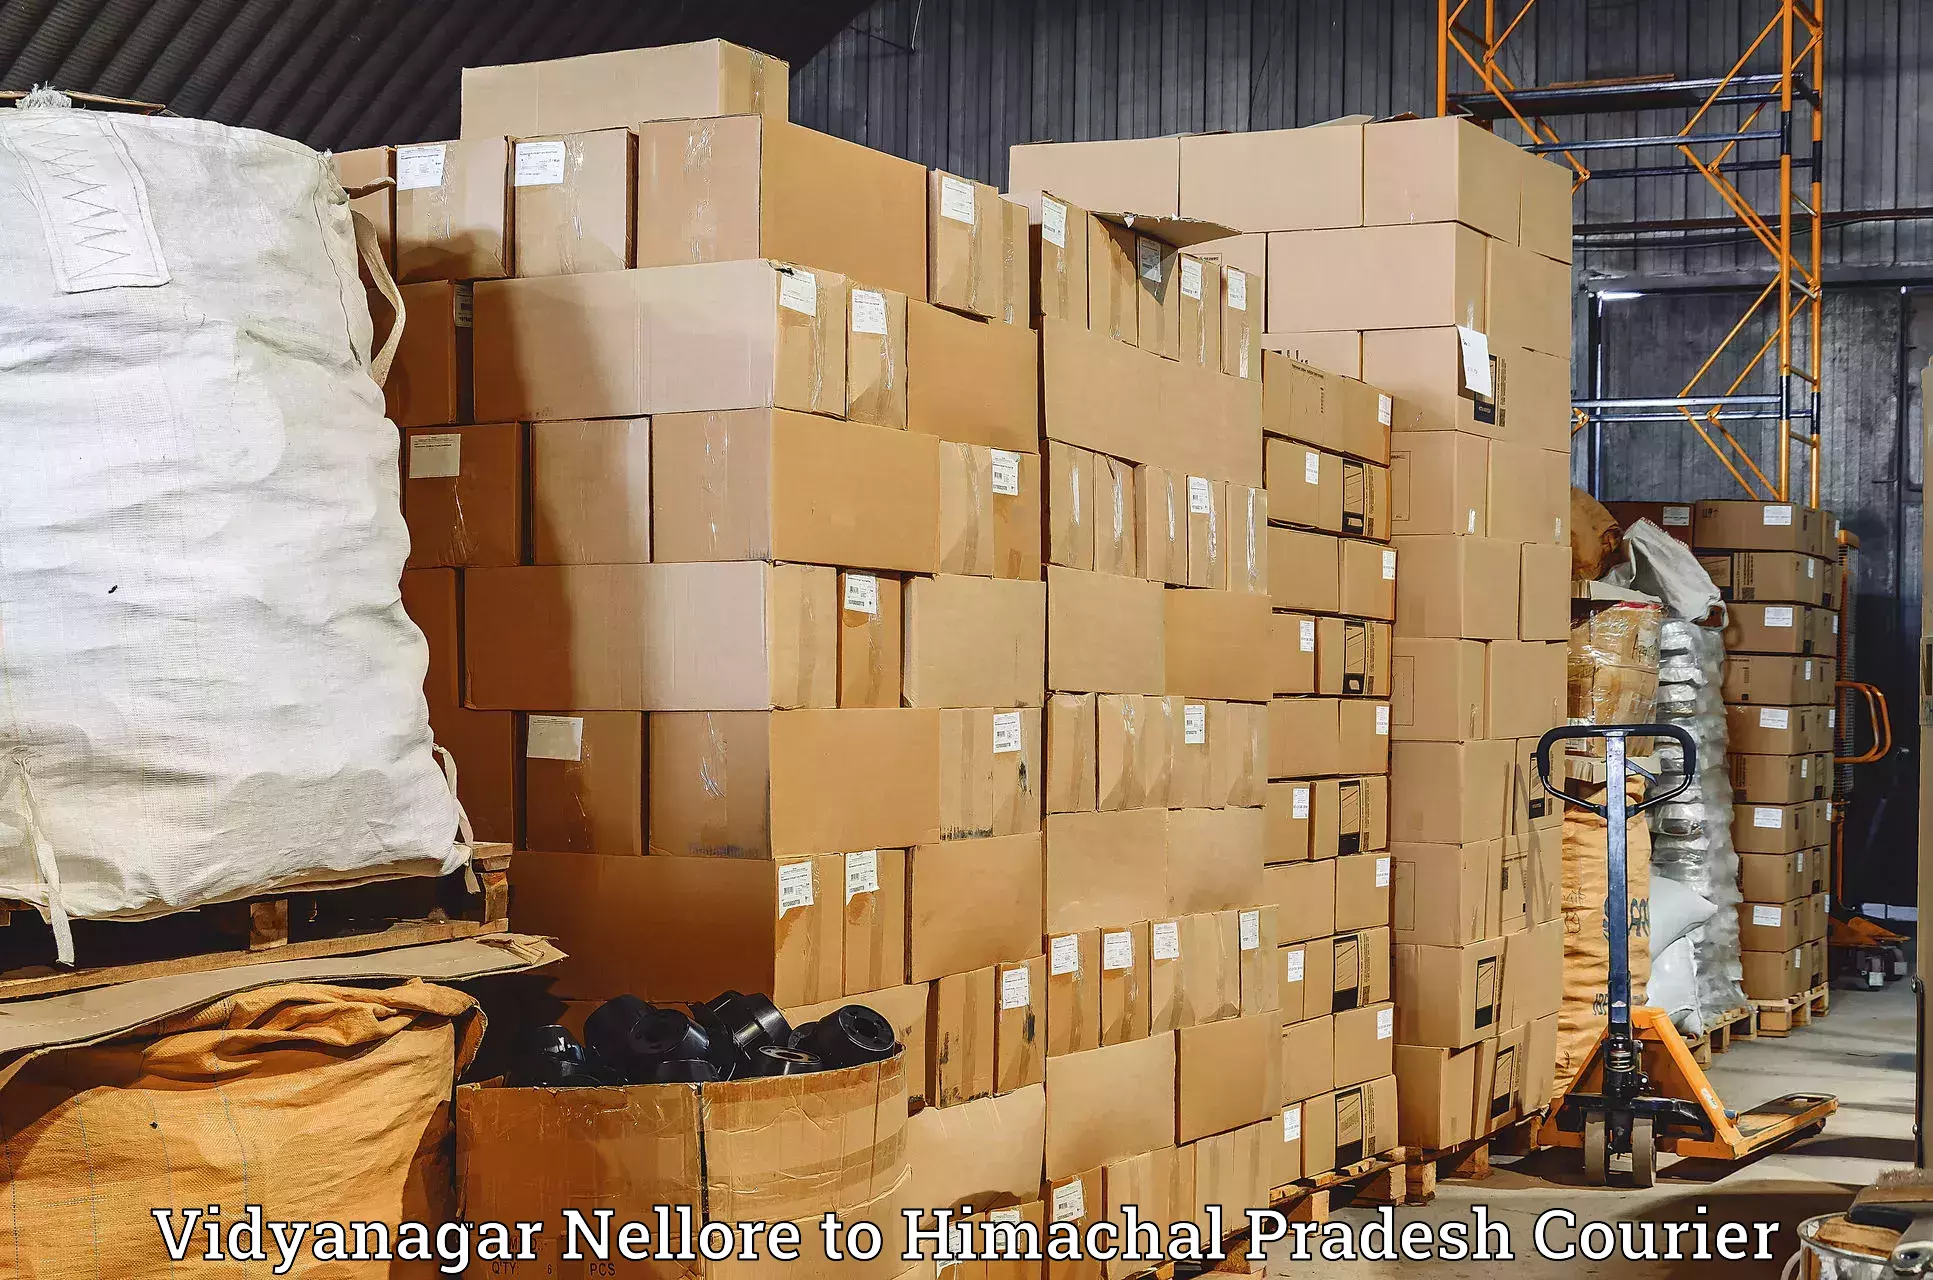 Reliable parcel services Vidyanagar Nellore to Kotkhai